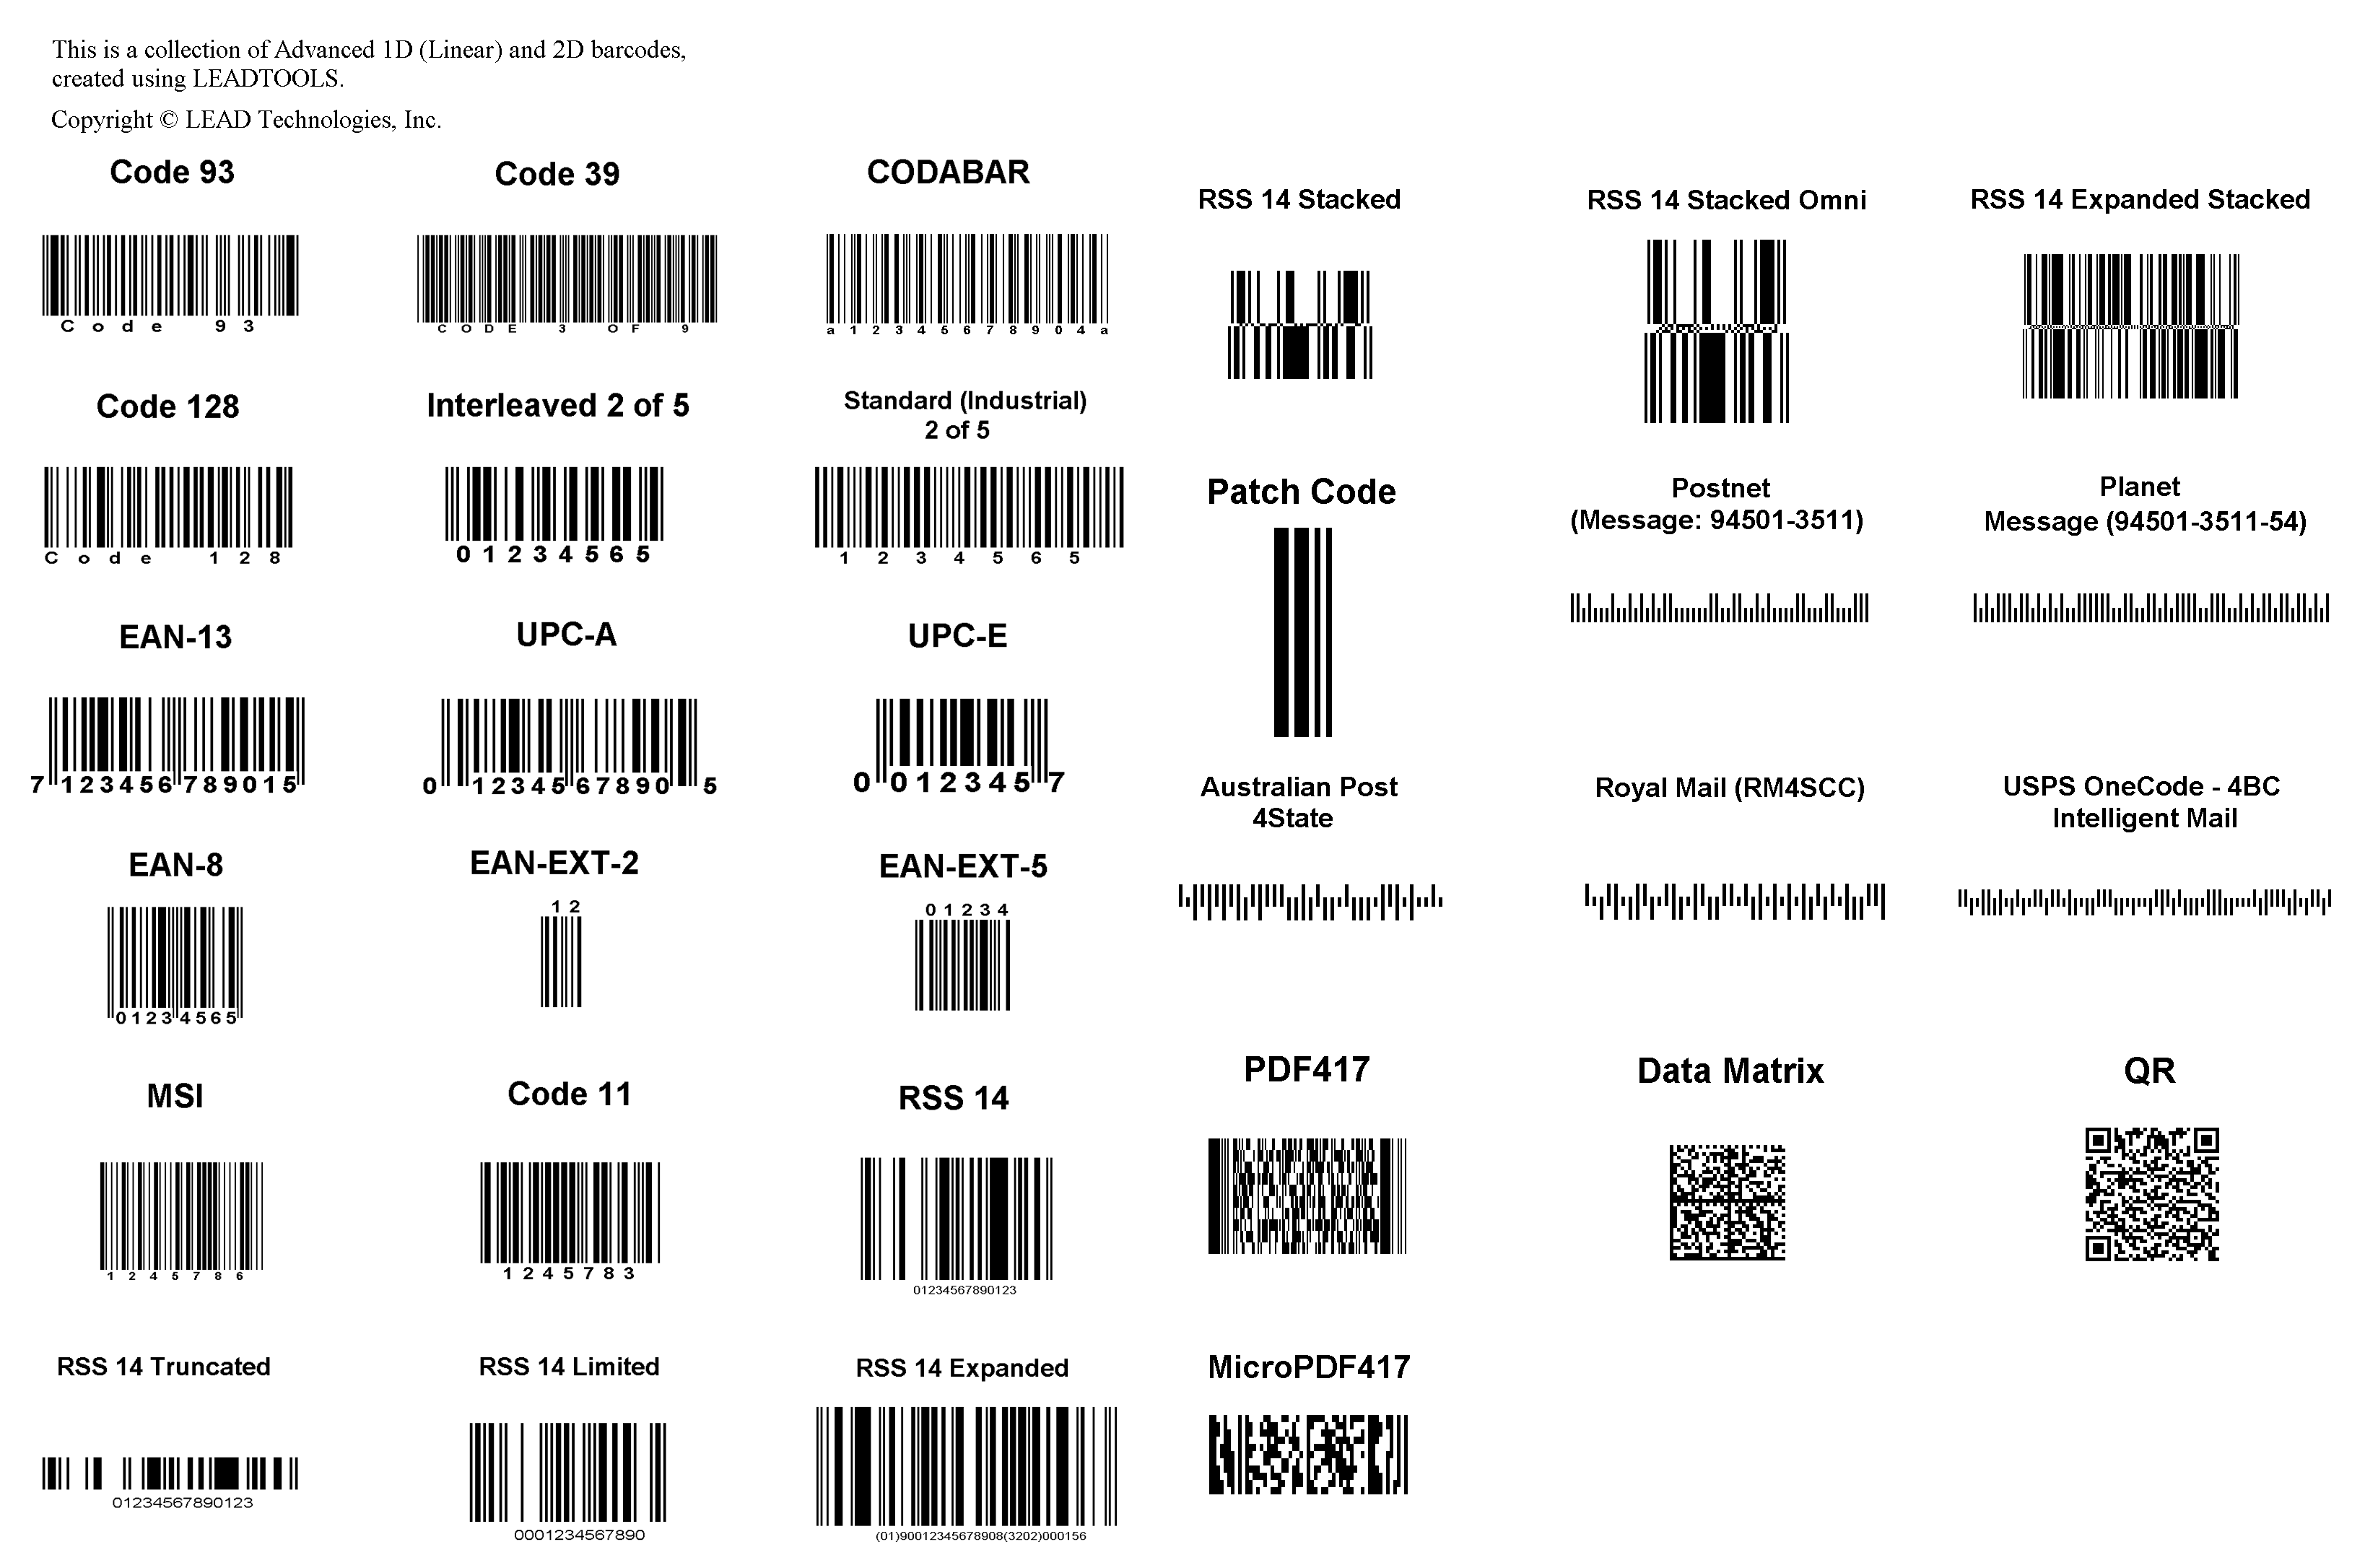 enter barcode number get information online